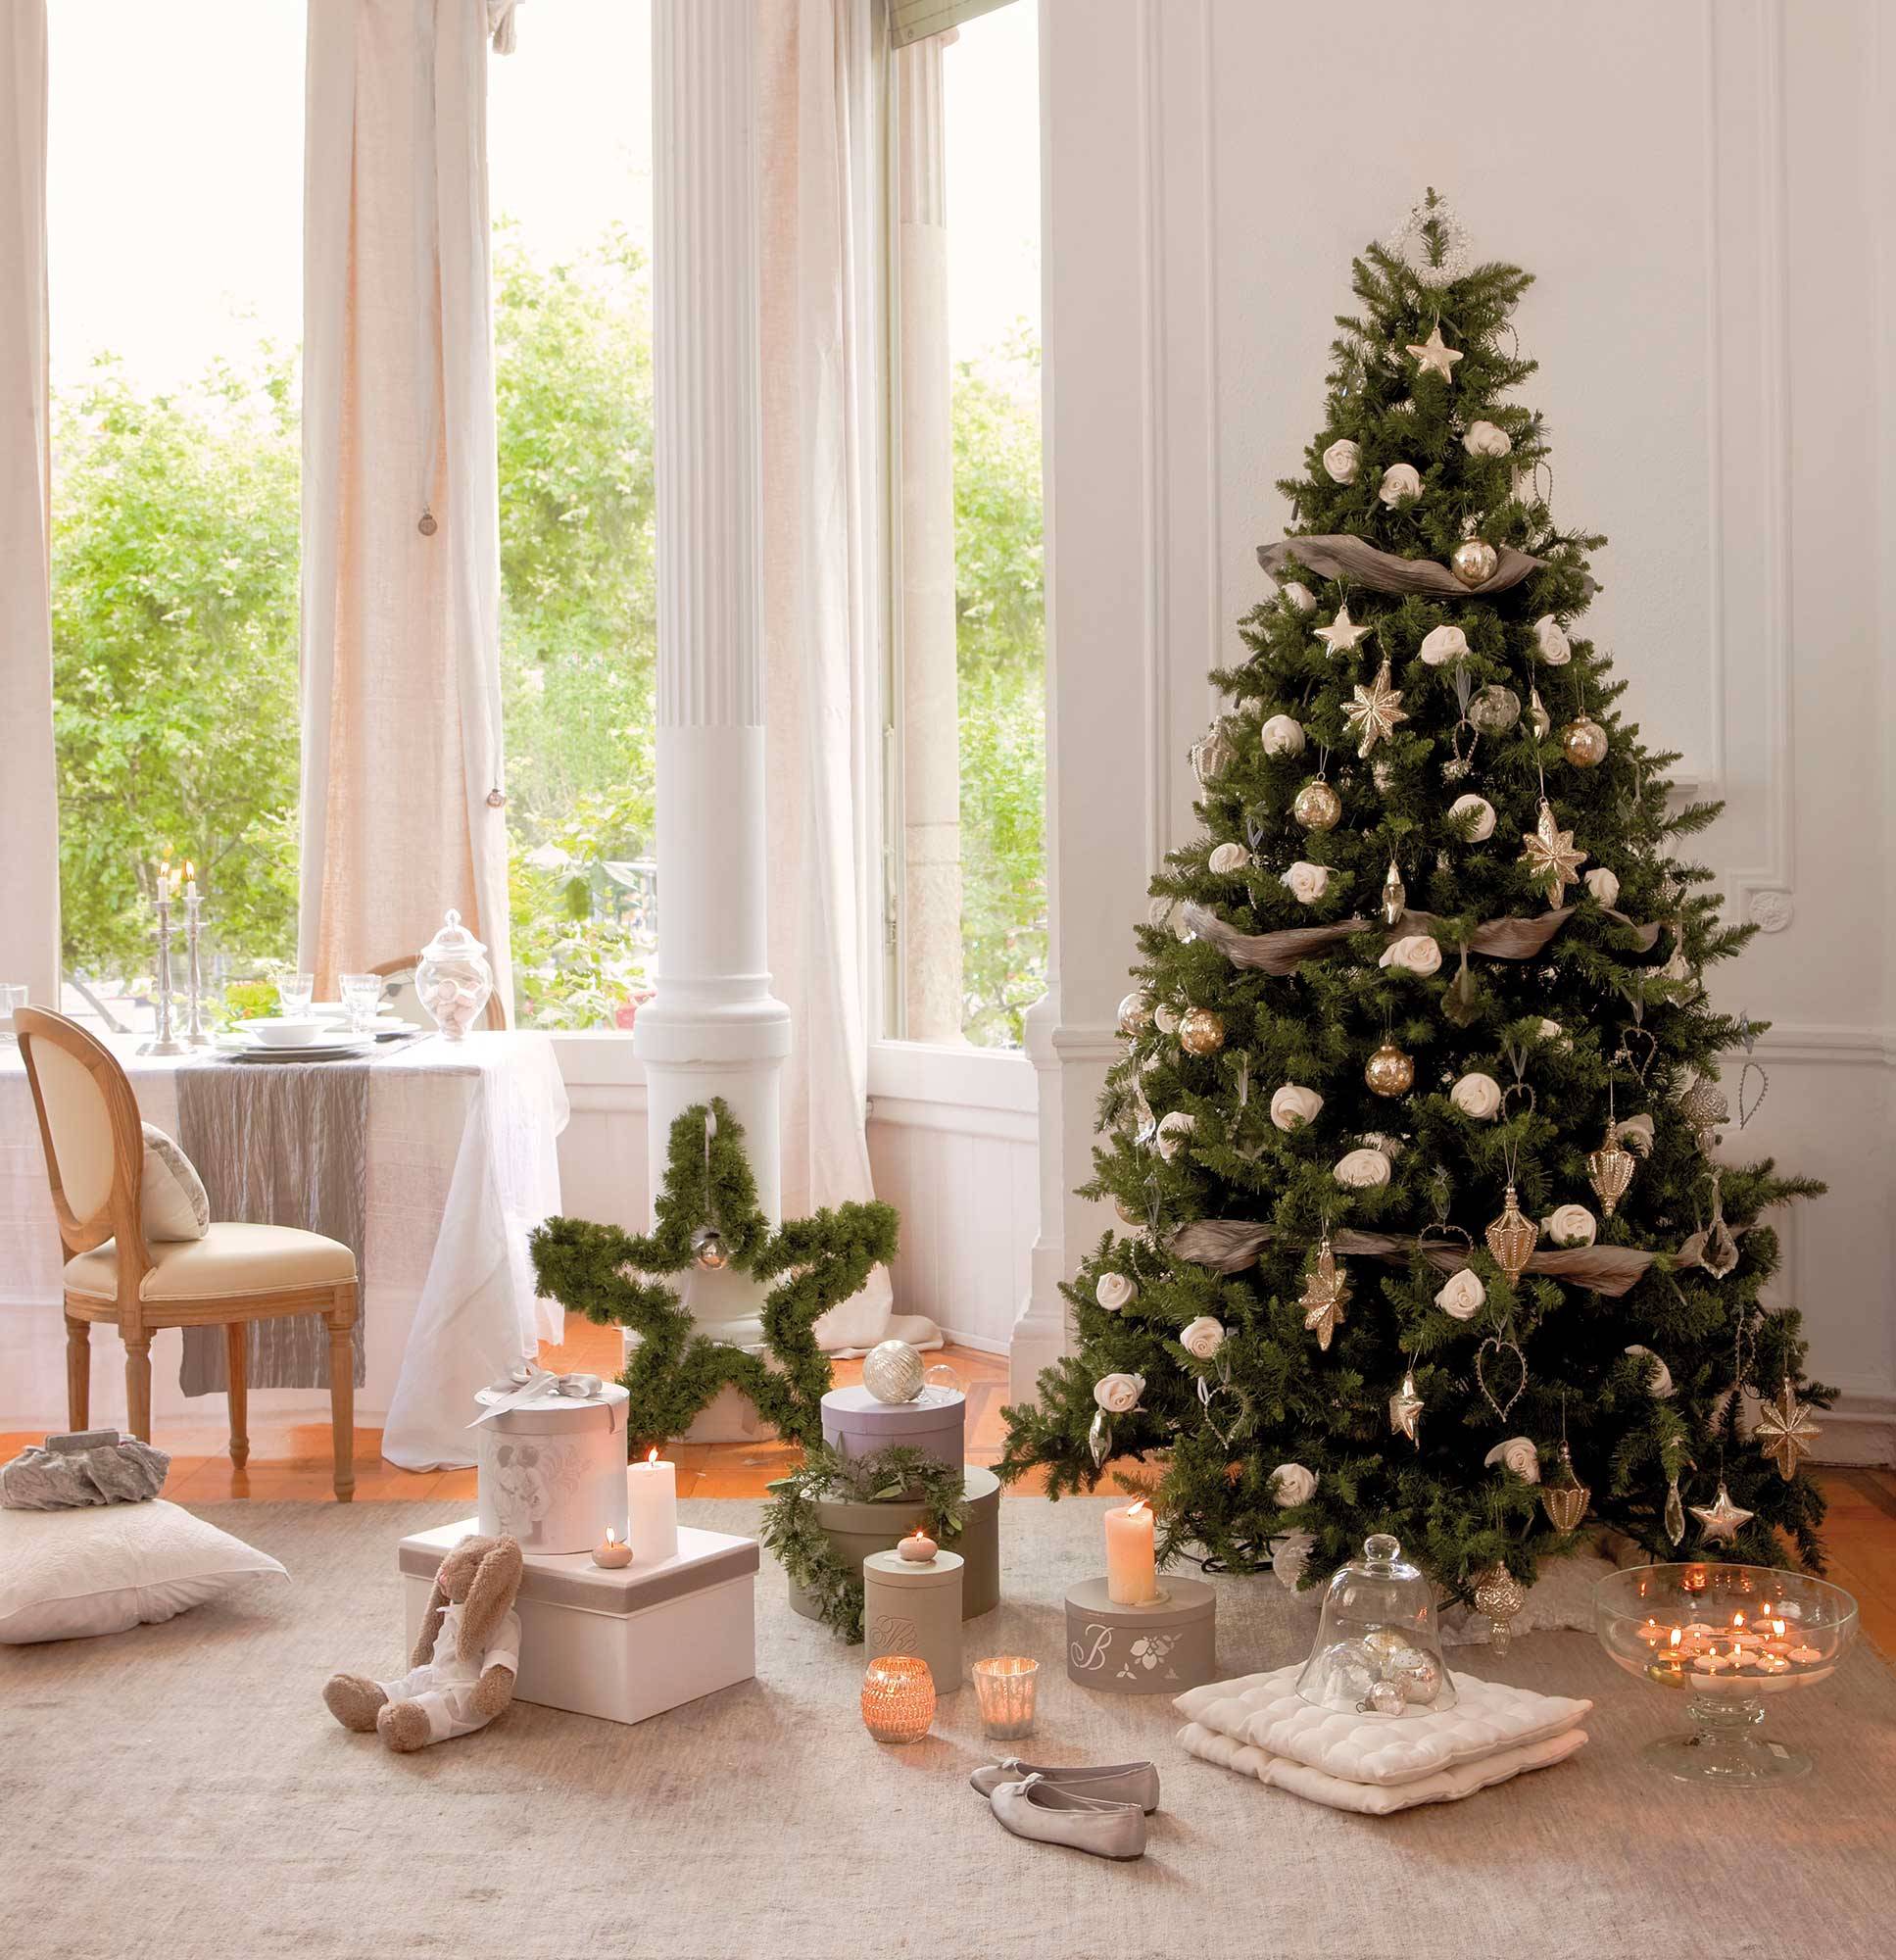 Comedor blanco y clásico con árbol de Navidad decorado con adornos plateados y rosas.